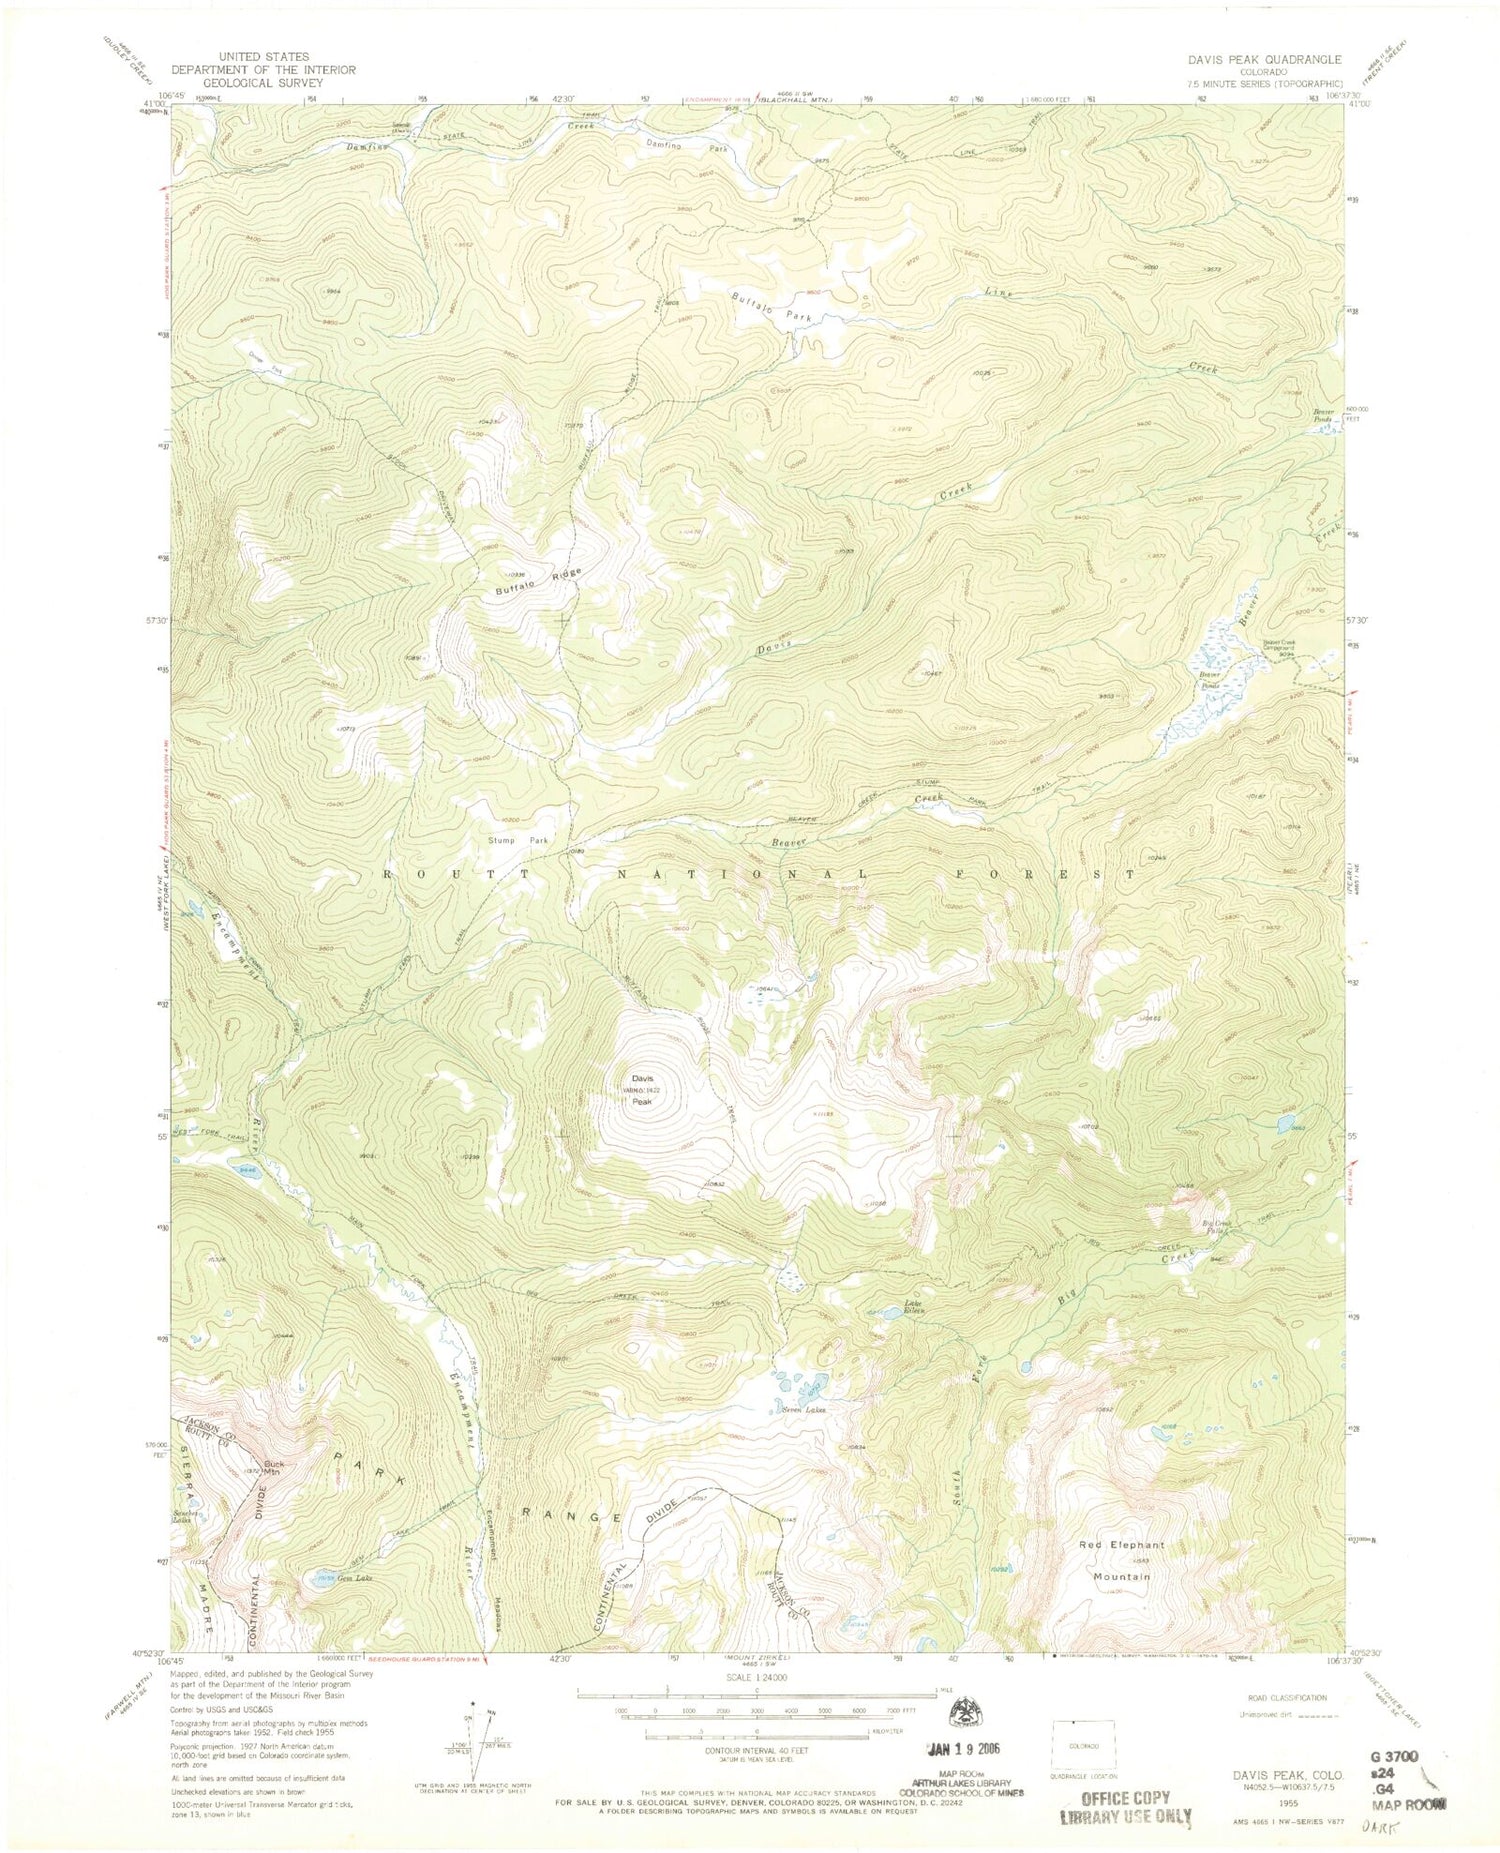 USGS Classic Davis Peak Colorado 7.5'x7.5' Topo Map Image